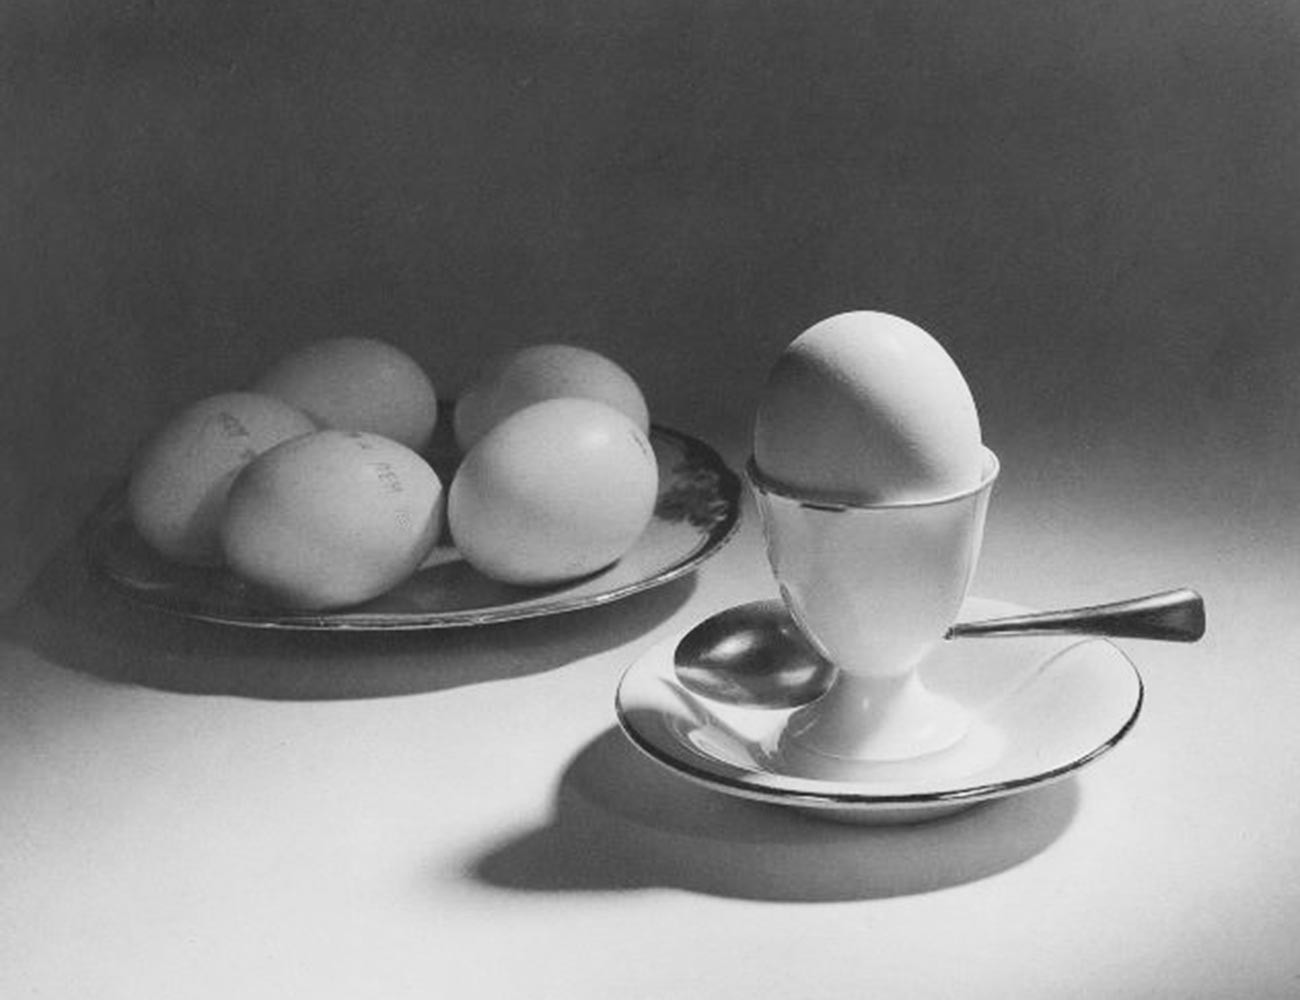 Des œufs, un bon choix pour une diète équilibrée (1939)

